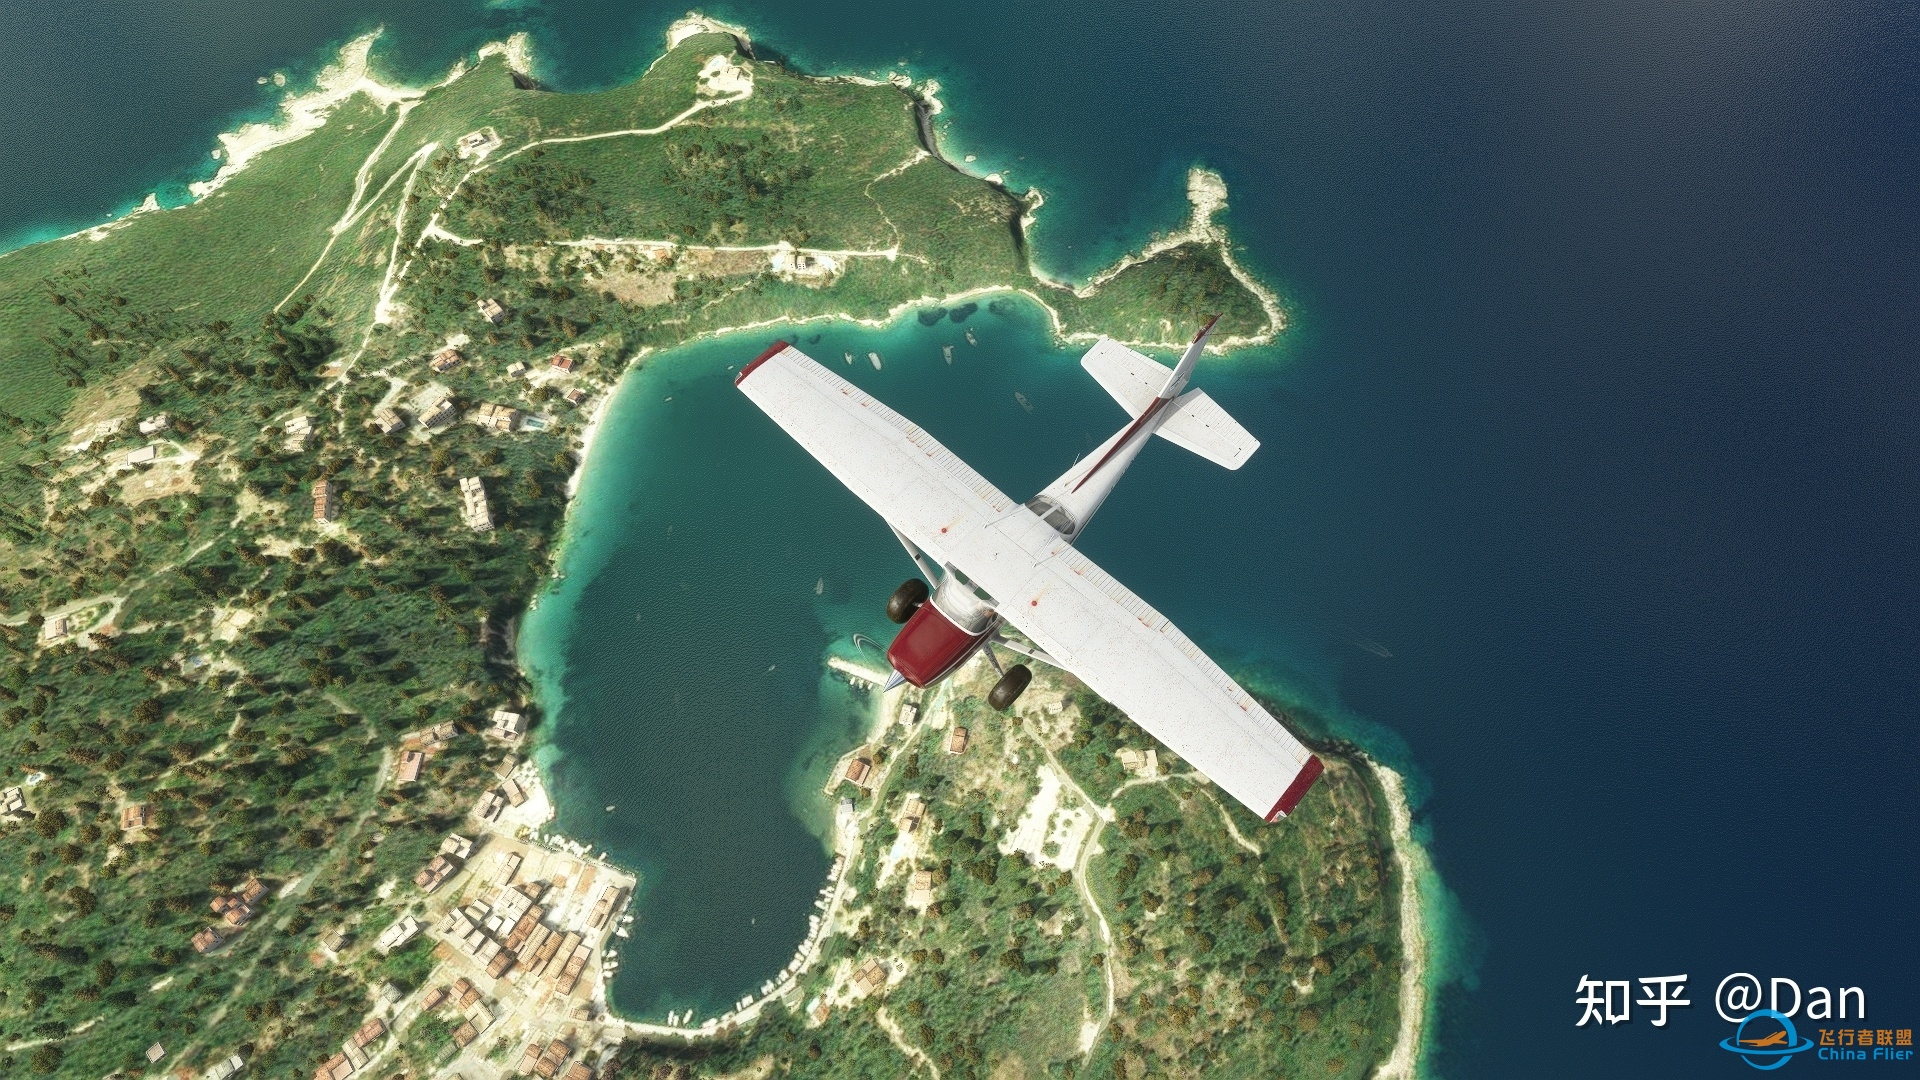 飞行模拟游戏《微软飞行模拟2020》实际体验如何？-4448 